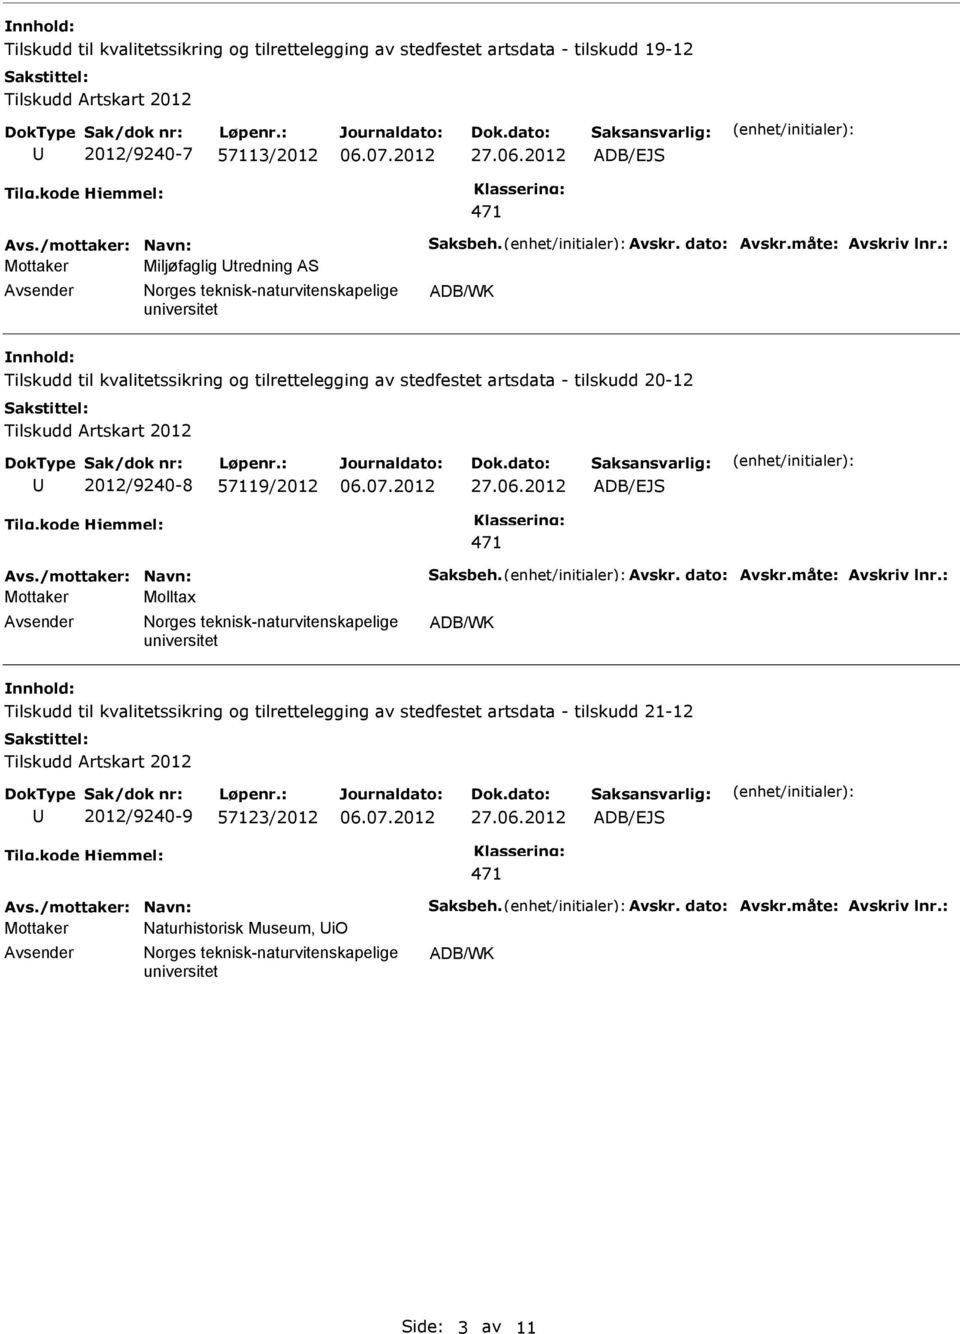 artsdata - tilskudd 20-12 2012/9240-8 57119/2012 Molltax Tilskudd til kvalitetssikring og